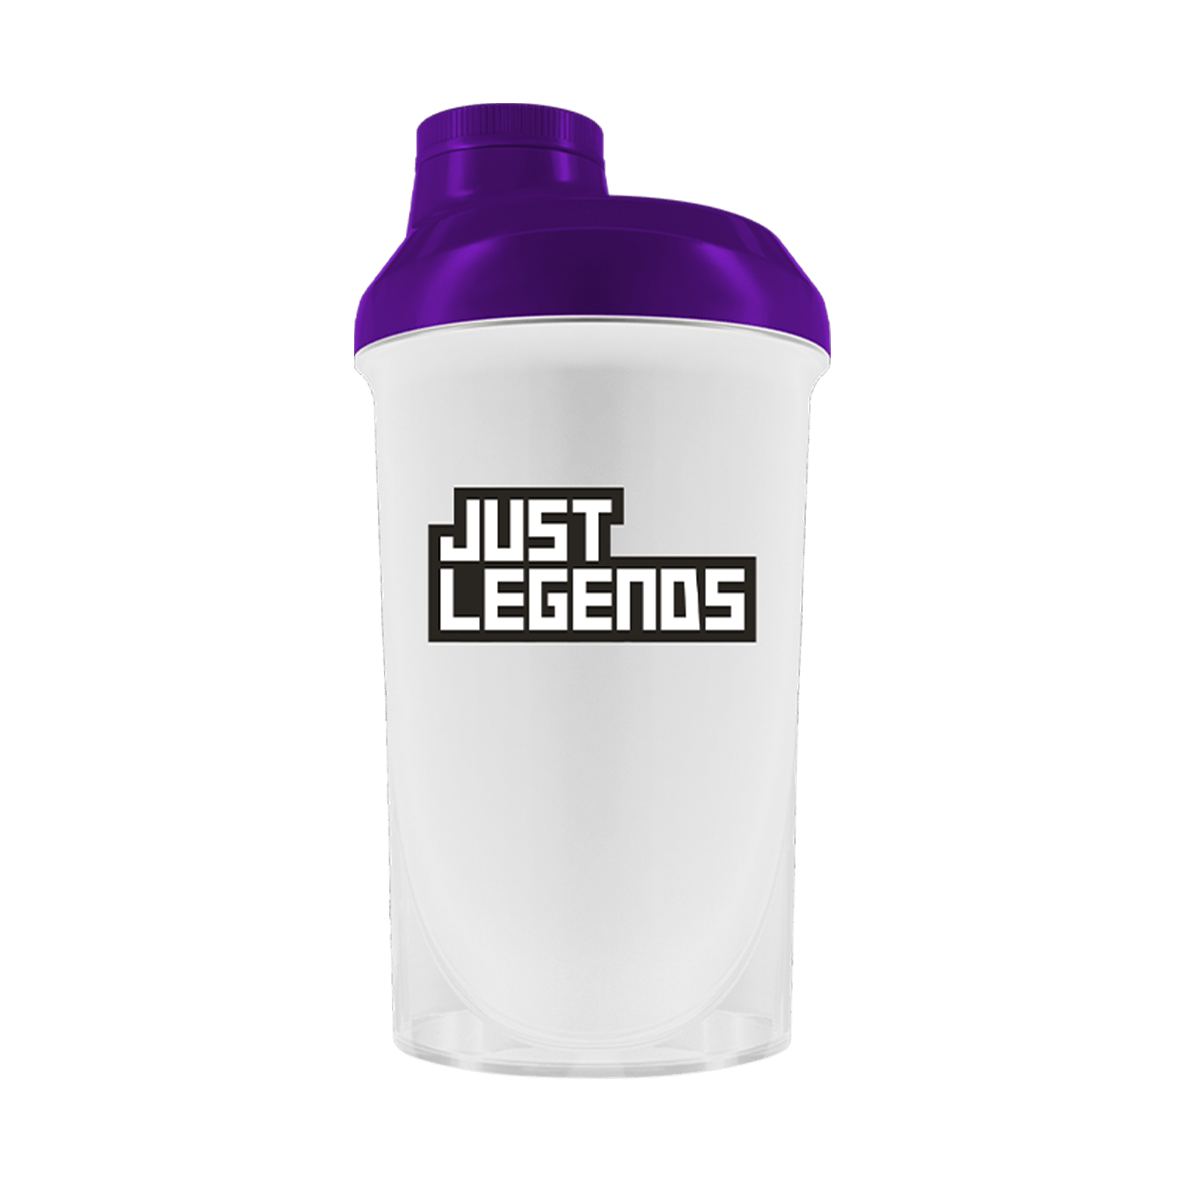 Just Legends Premium Shaker "Purple" | Funktionaler, veganer Shaker auf Pulverbasis ohne Zucker, mit wenig Kalorien, vielen Vitaminen und natürlichen Aromen.